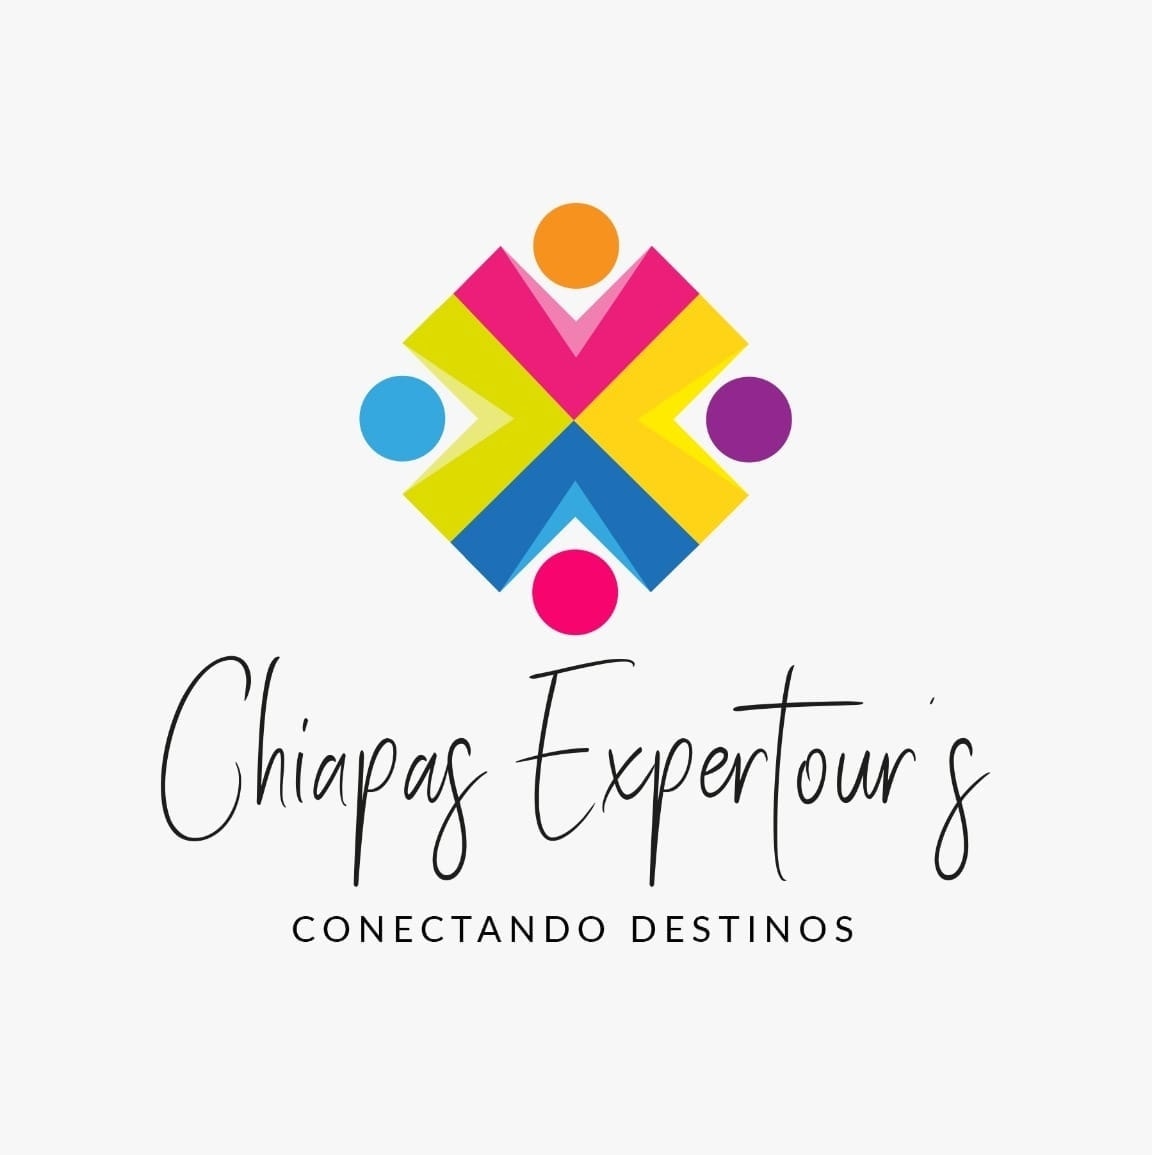 Chiapas Expertour's